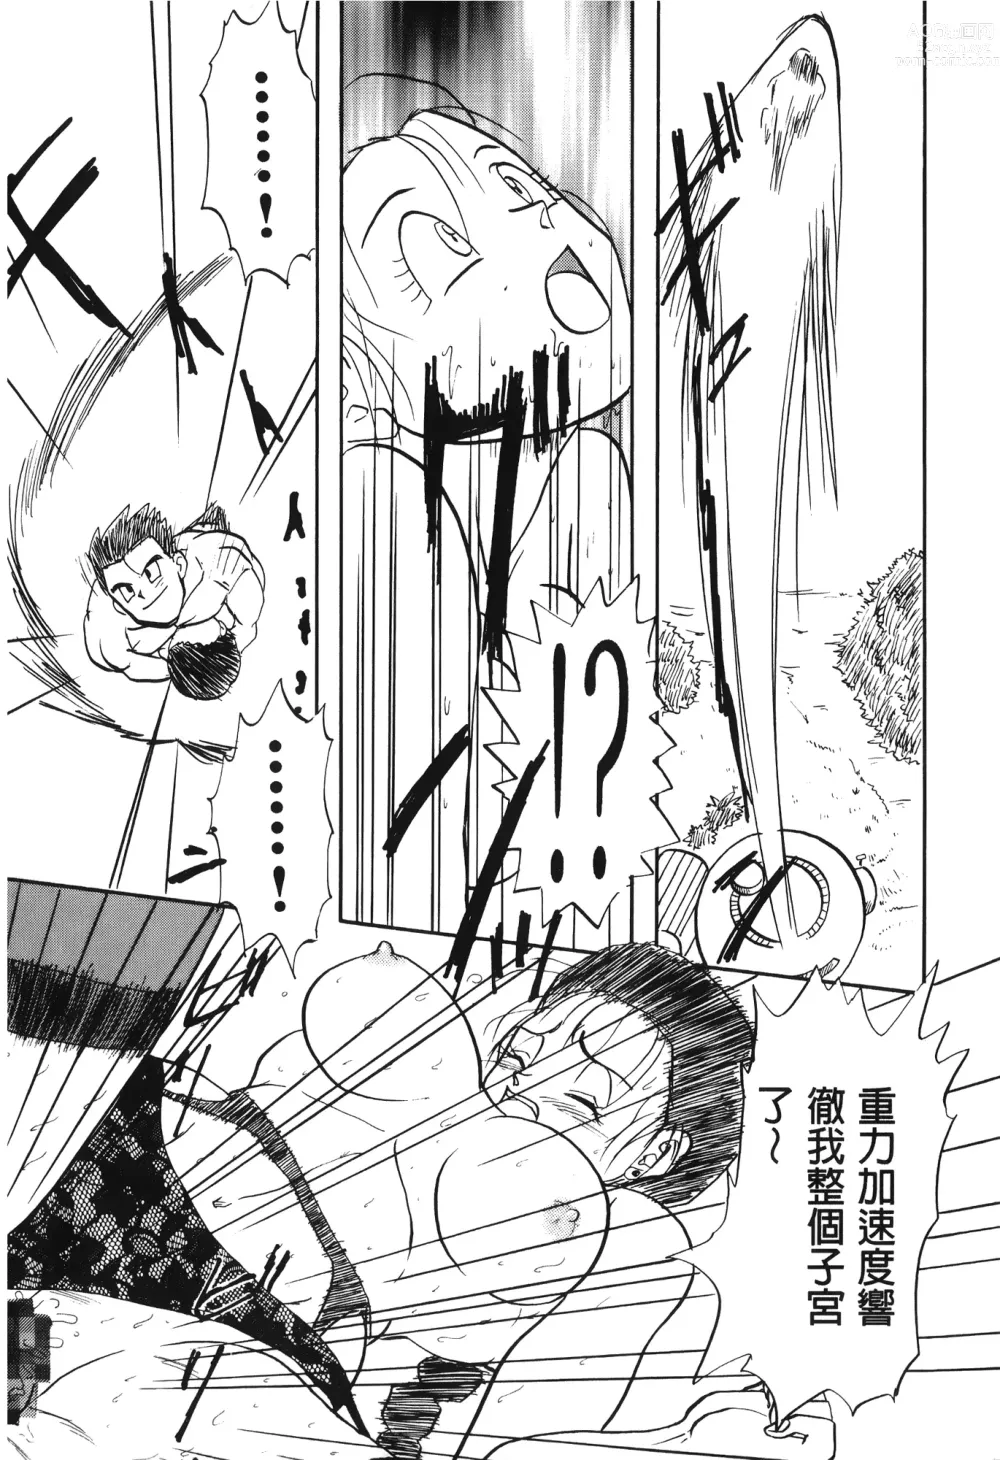 Page 157 of doujinshi ドラゴンパール 03